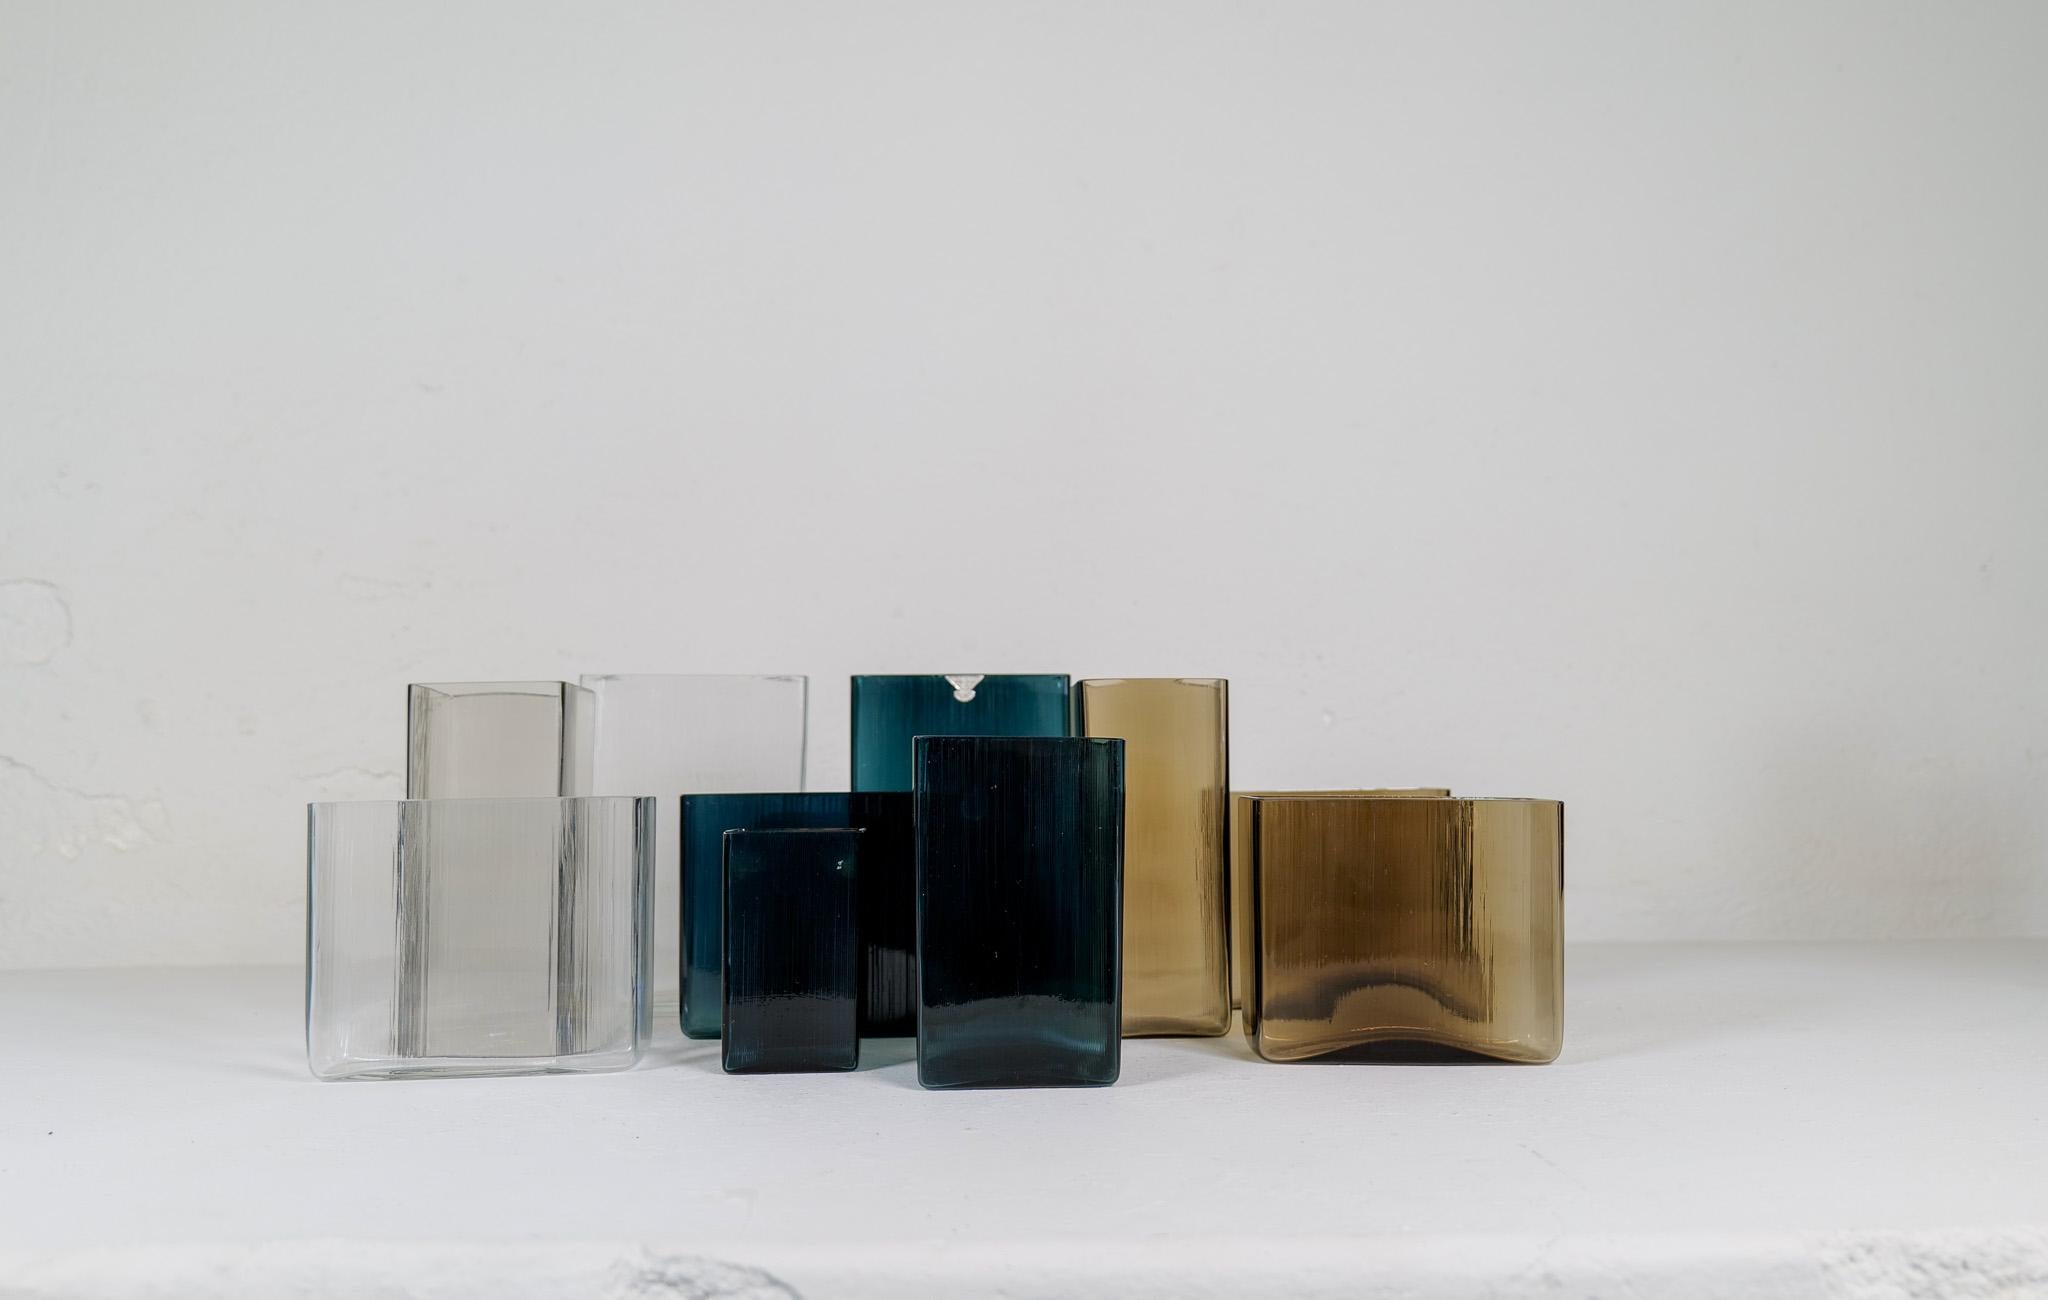 Diese Kollektion von zehn Vasen wurde in den 1960er Jahren in Gullaskruf in Schweden hergestellt und vom berühmten Lennart Andersson entworfen. Wegen ihrer Form wurden sie Isi genannt, was so viel wie Eis bedeutet. Verschiedene Farben der Vasen, die